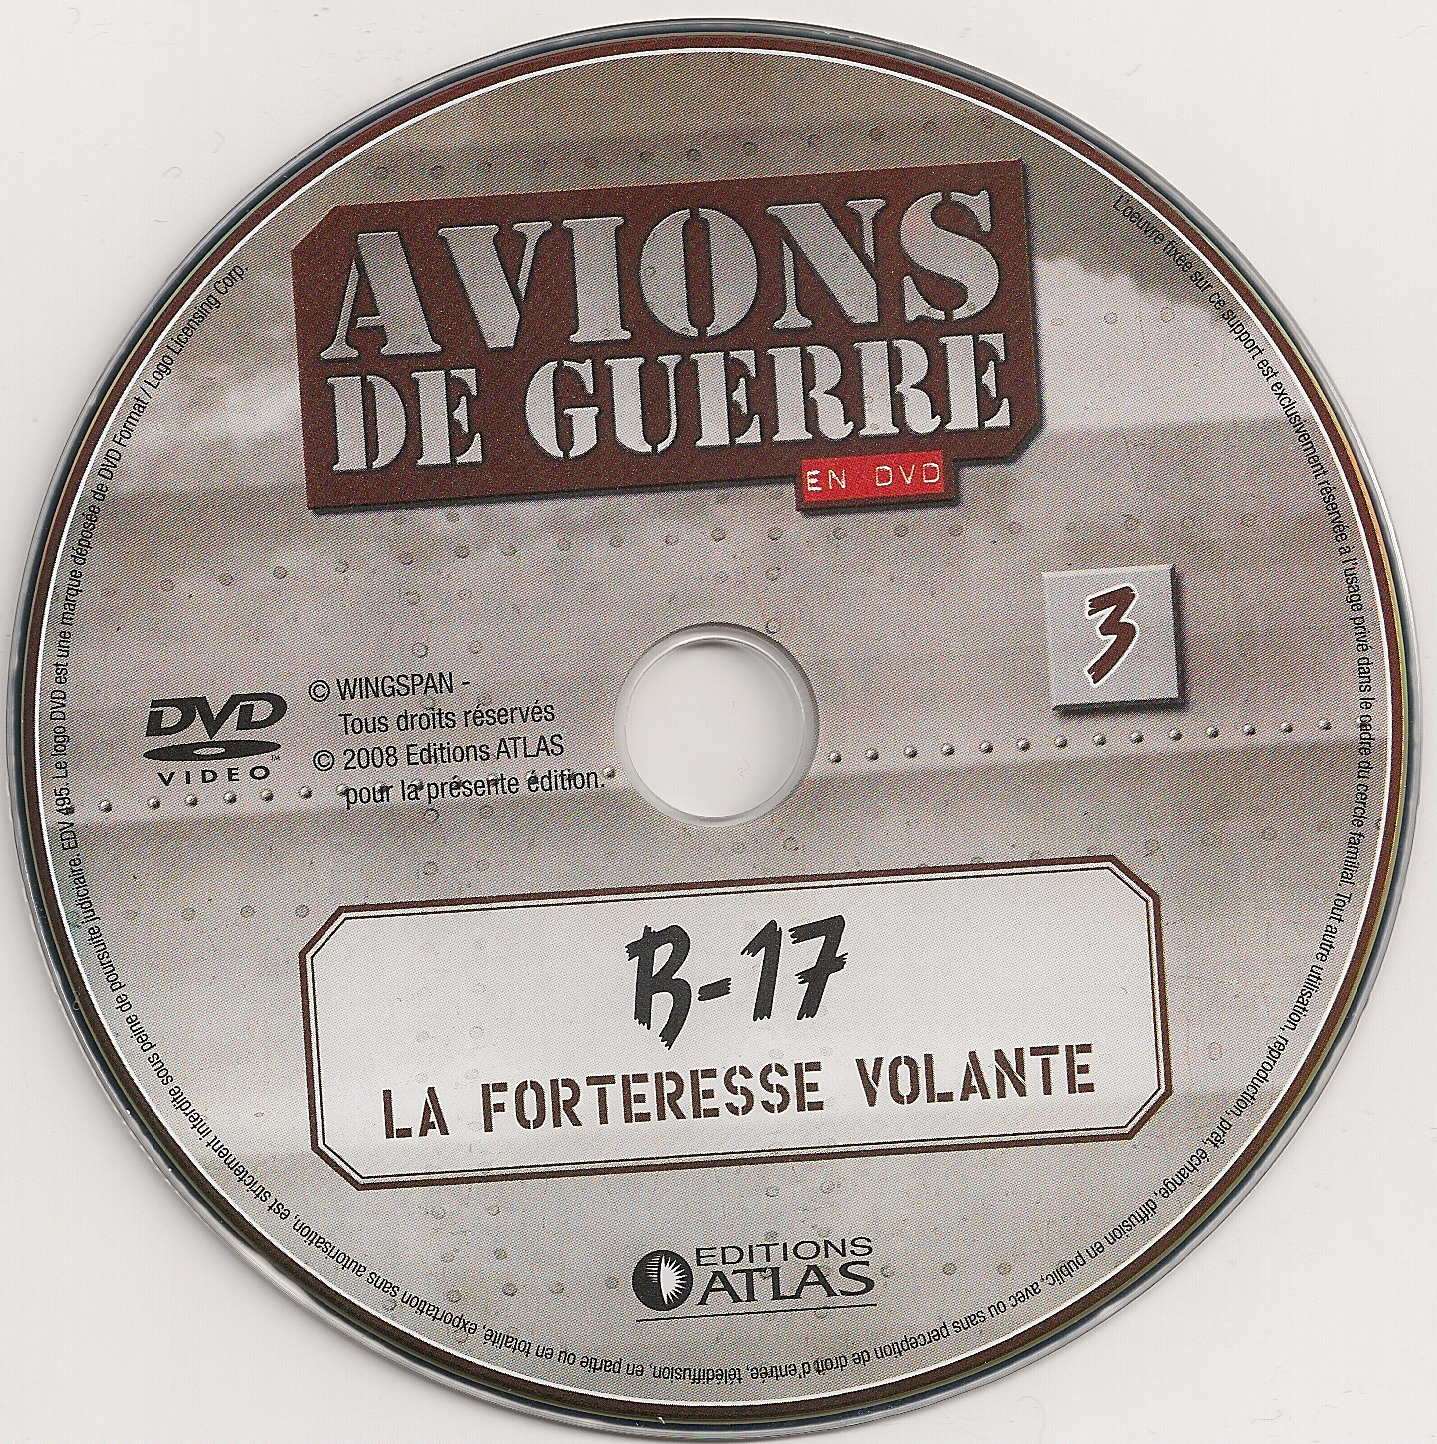 Avions de guerre en DVD vol 03